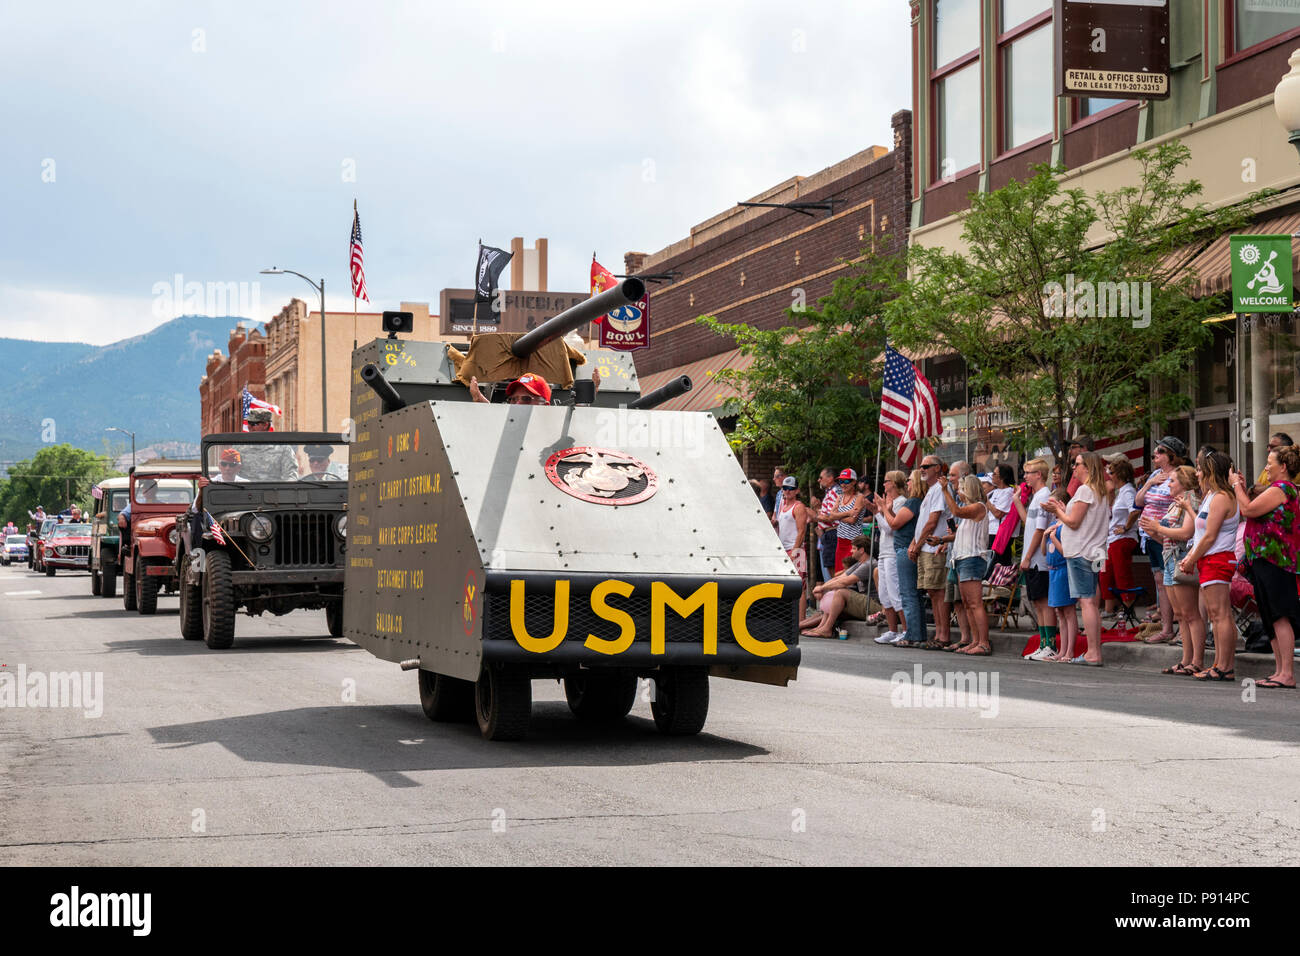 United States Marine Corp réservoir simulé est le quatrième de juillet parade dans la petite ville de montagne de Salida, Colorado, USA Banque D'Images